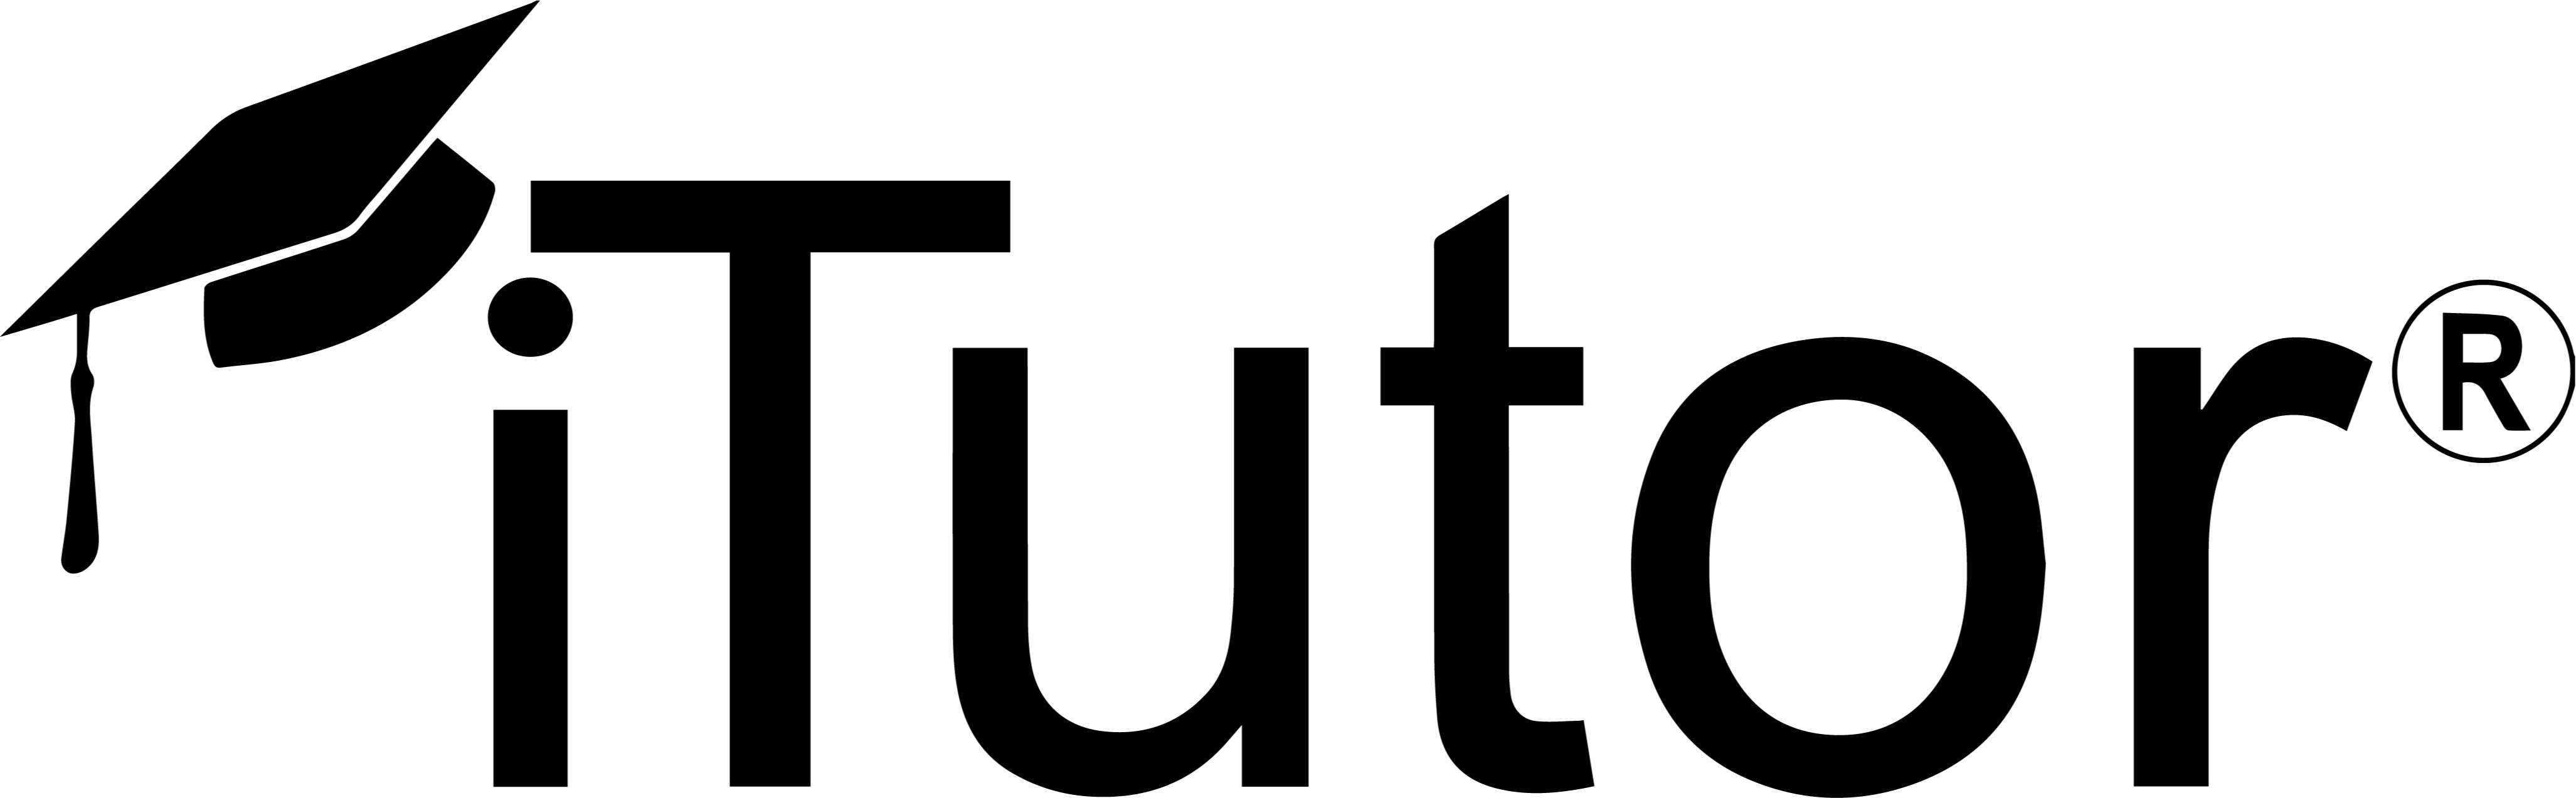 Itutor logo